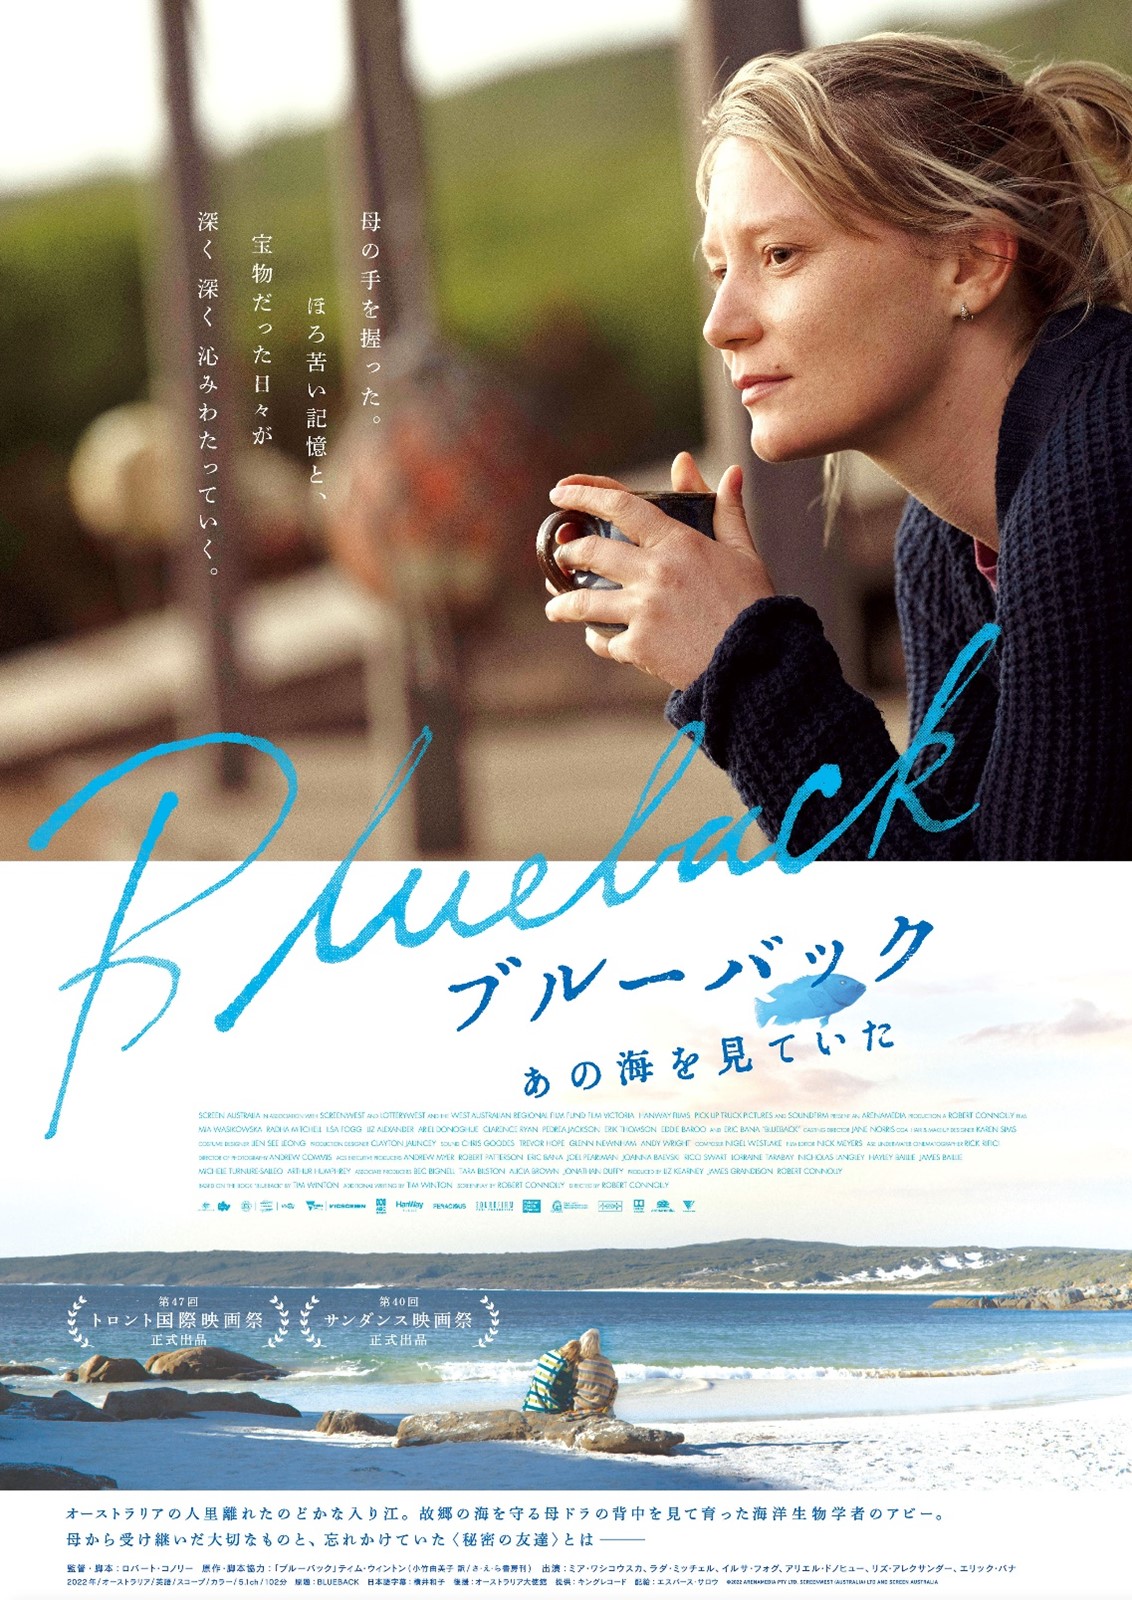 Film \\\\\\\\'Blueback\\\\\\\\' release in Japan